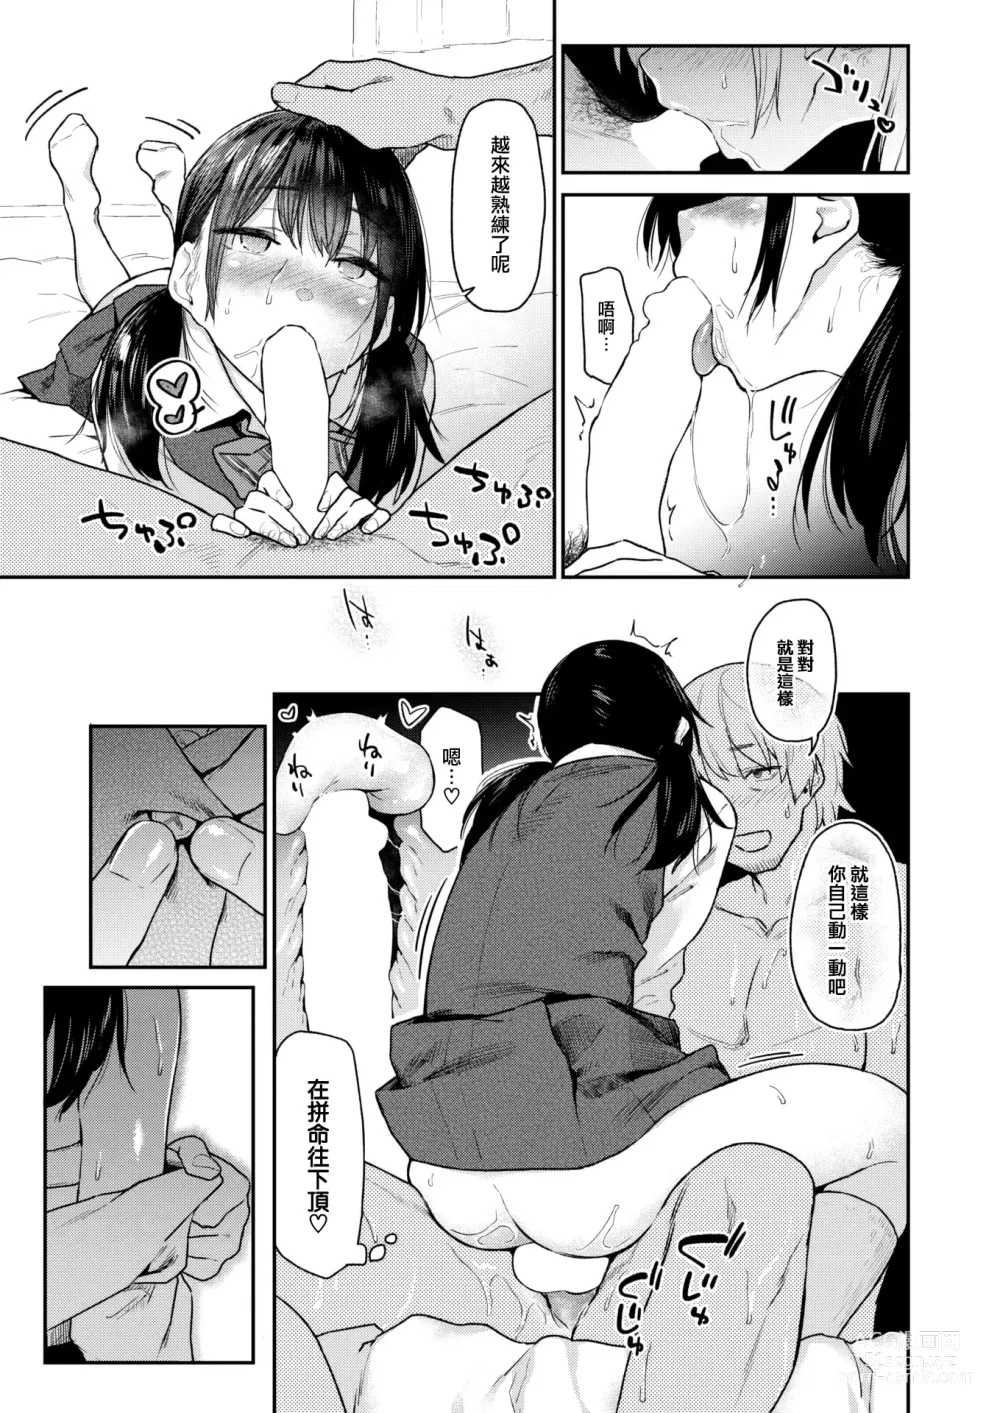 Page 22 of manga Okaeri - Im waiting for you....